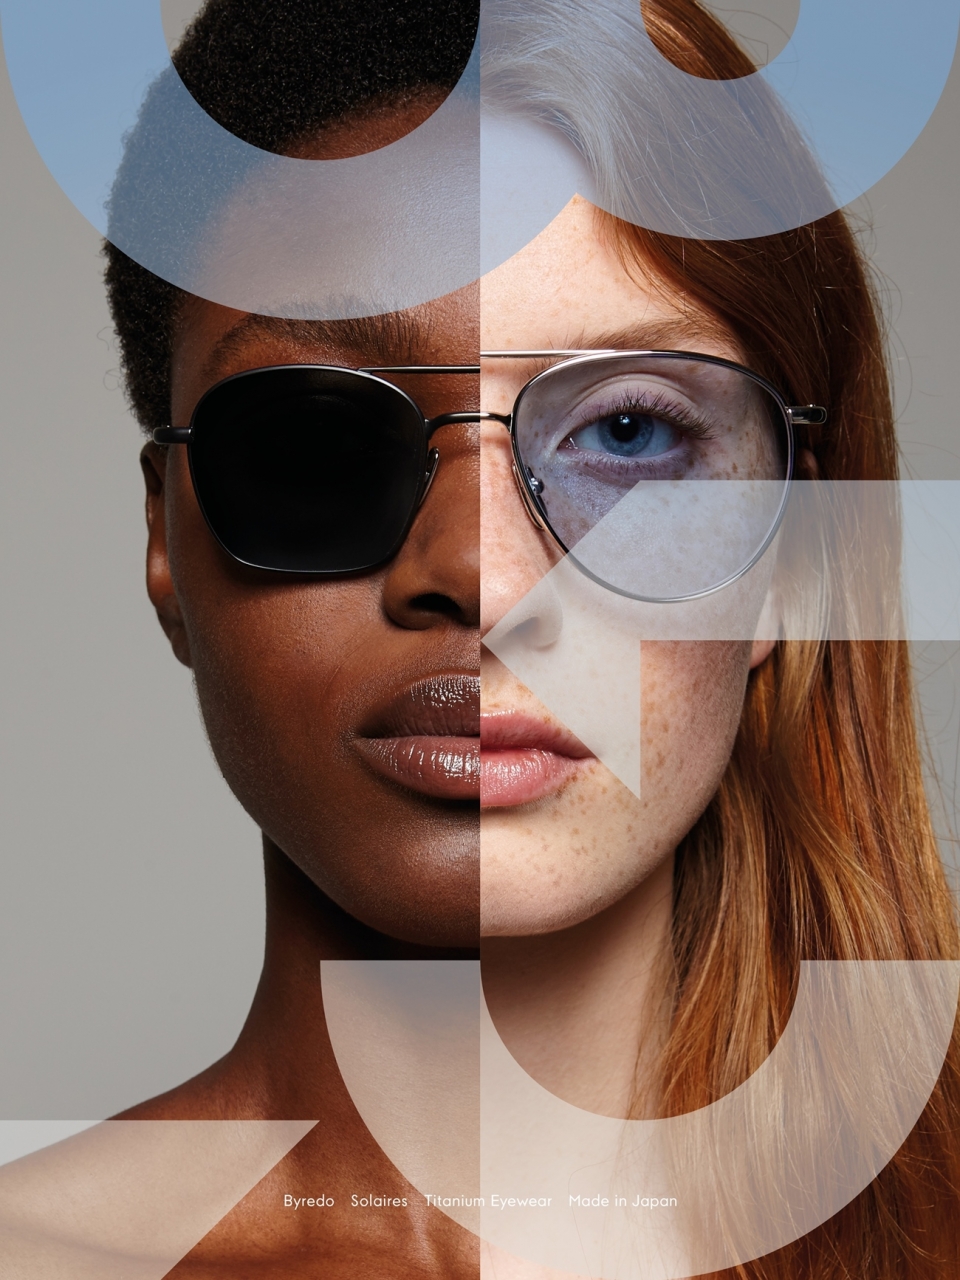 바이레도는 브랜드의 첫 아이웨어 라인 ‘솔레어’ 컬렉션을 출시한다. (신세계인터내셔날 제공) 2019.8.23/그린포스트코리아